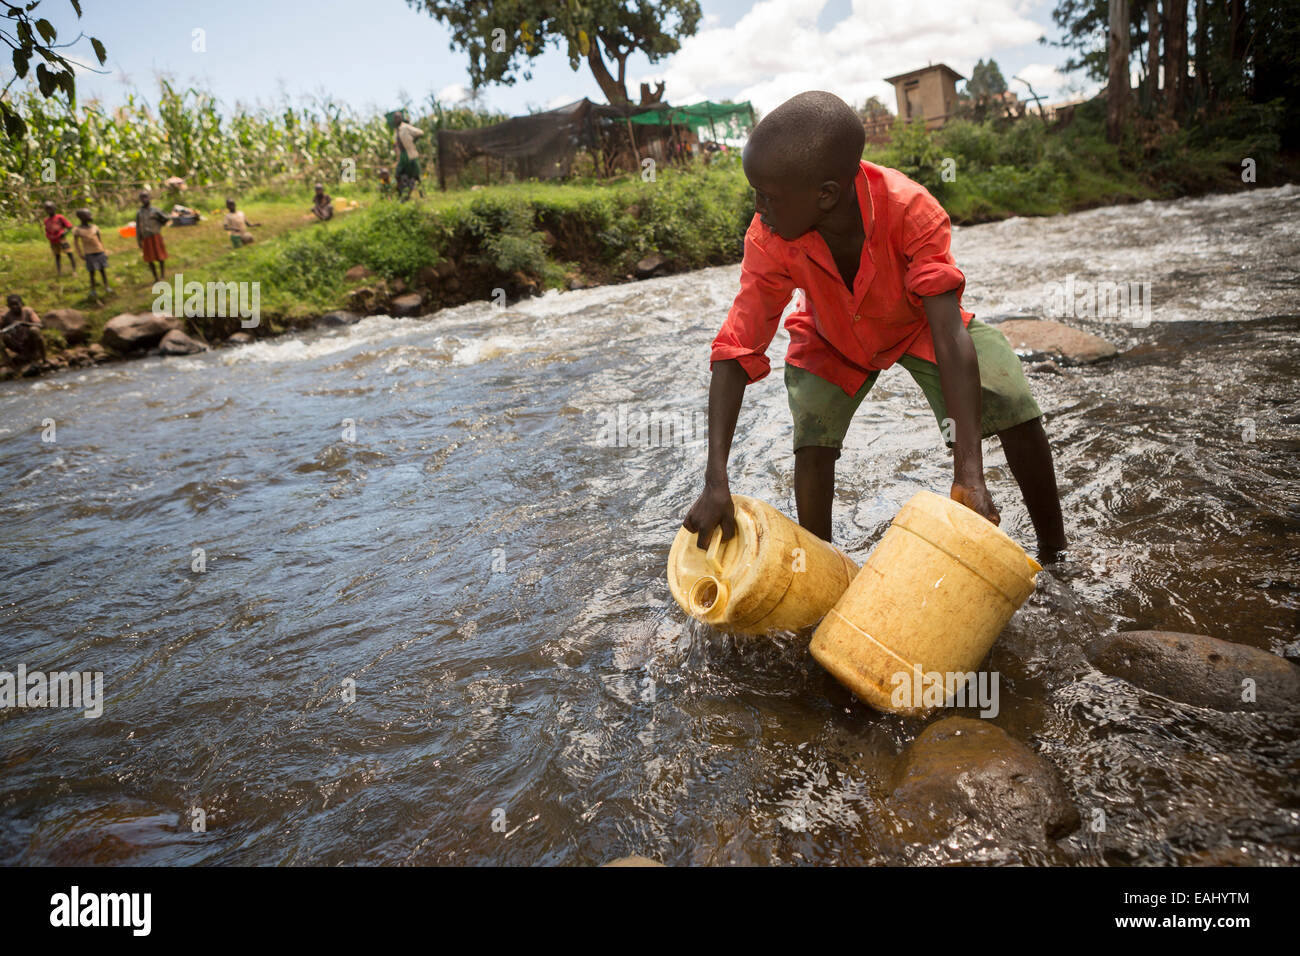 Viele Menschen in Bukwo, Uganda beziehen ihr Trinkwasser aus ungeschützten oder kontaminierten Quellen, wie der Fluss Bukwo. Stockfoto